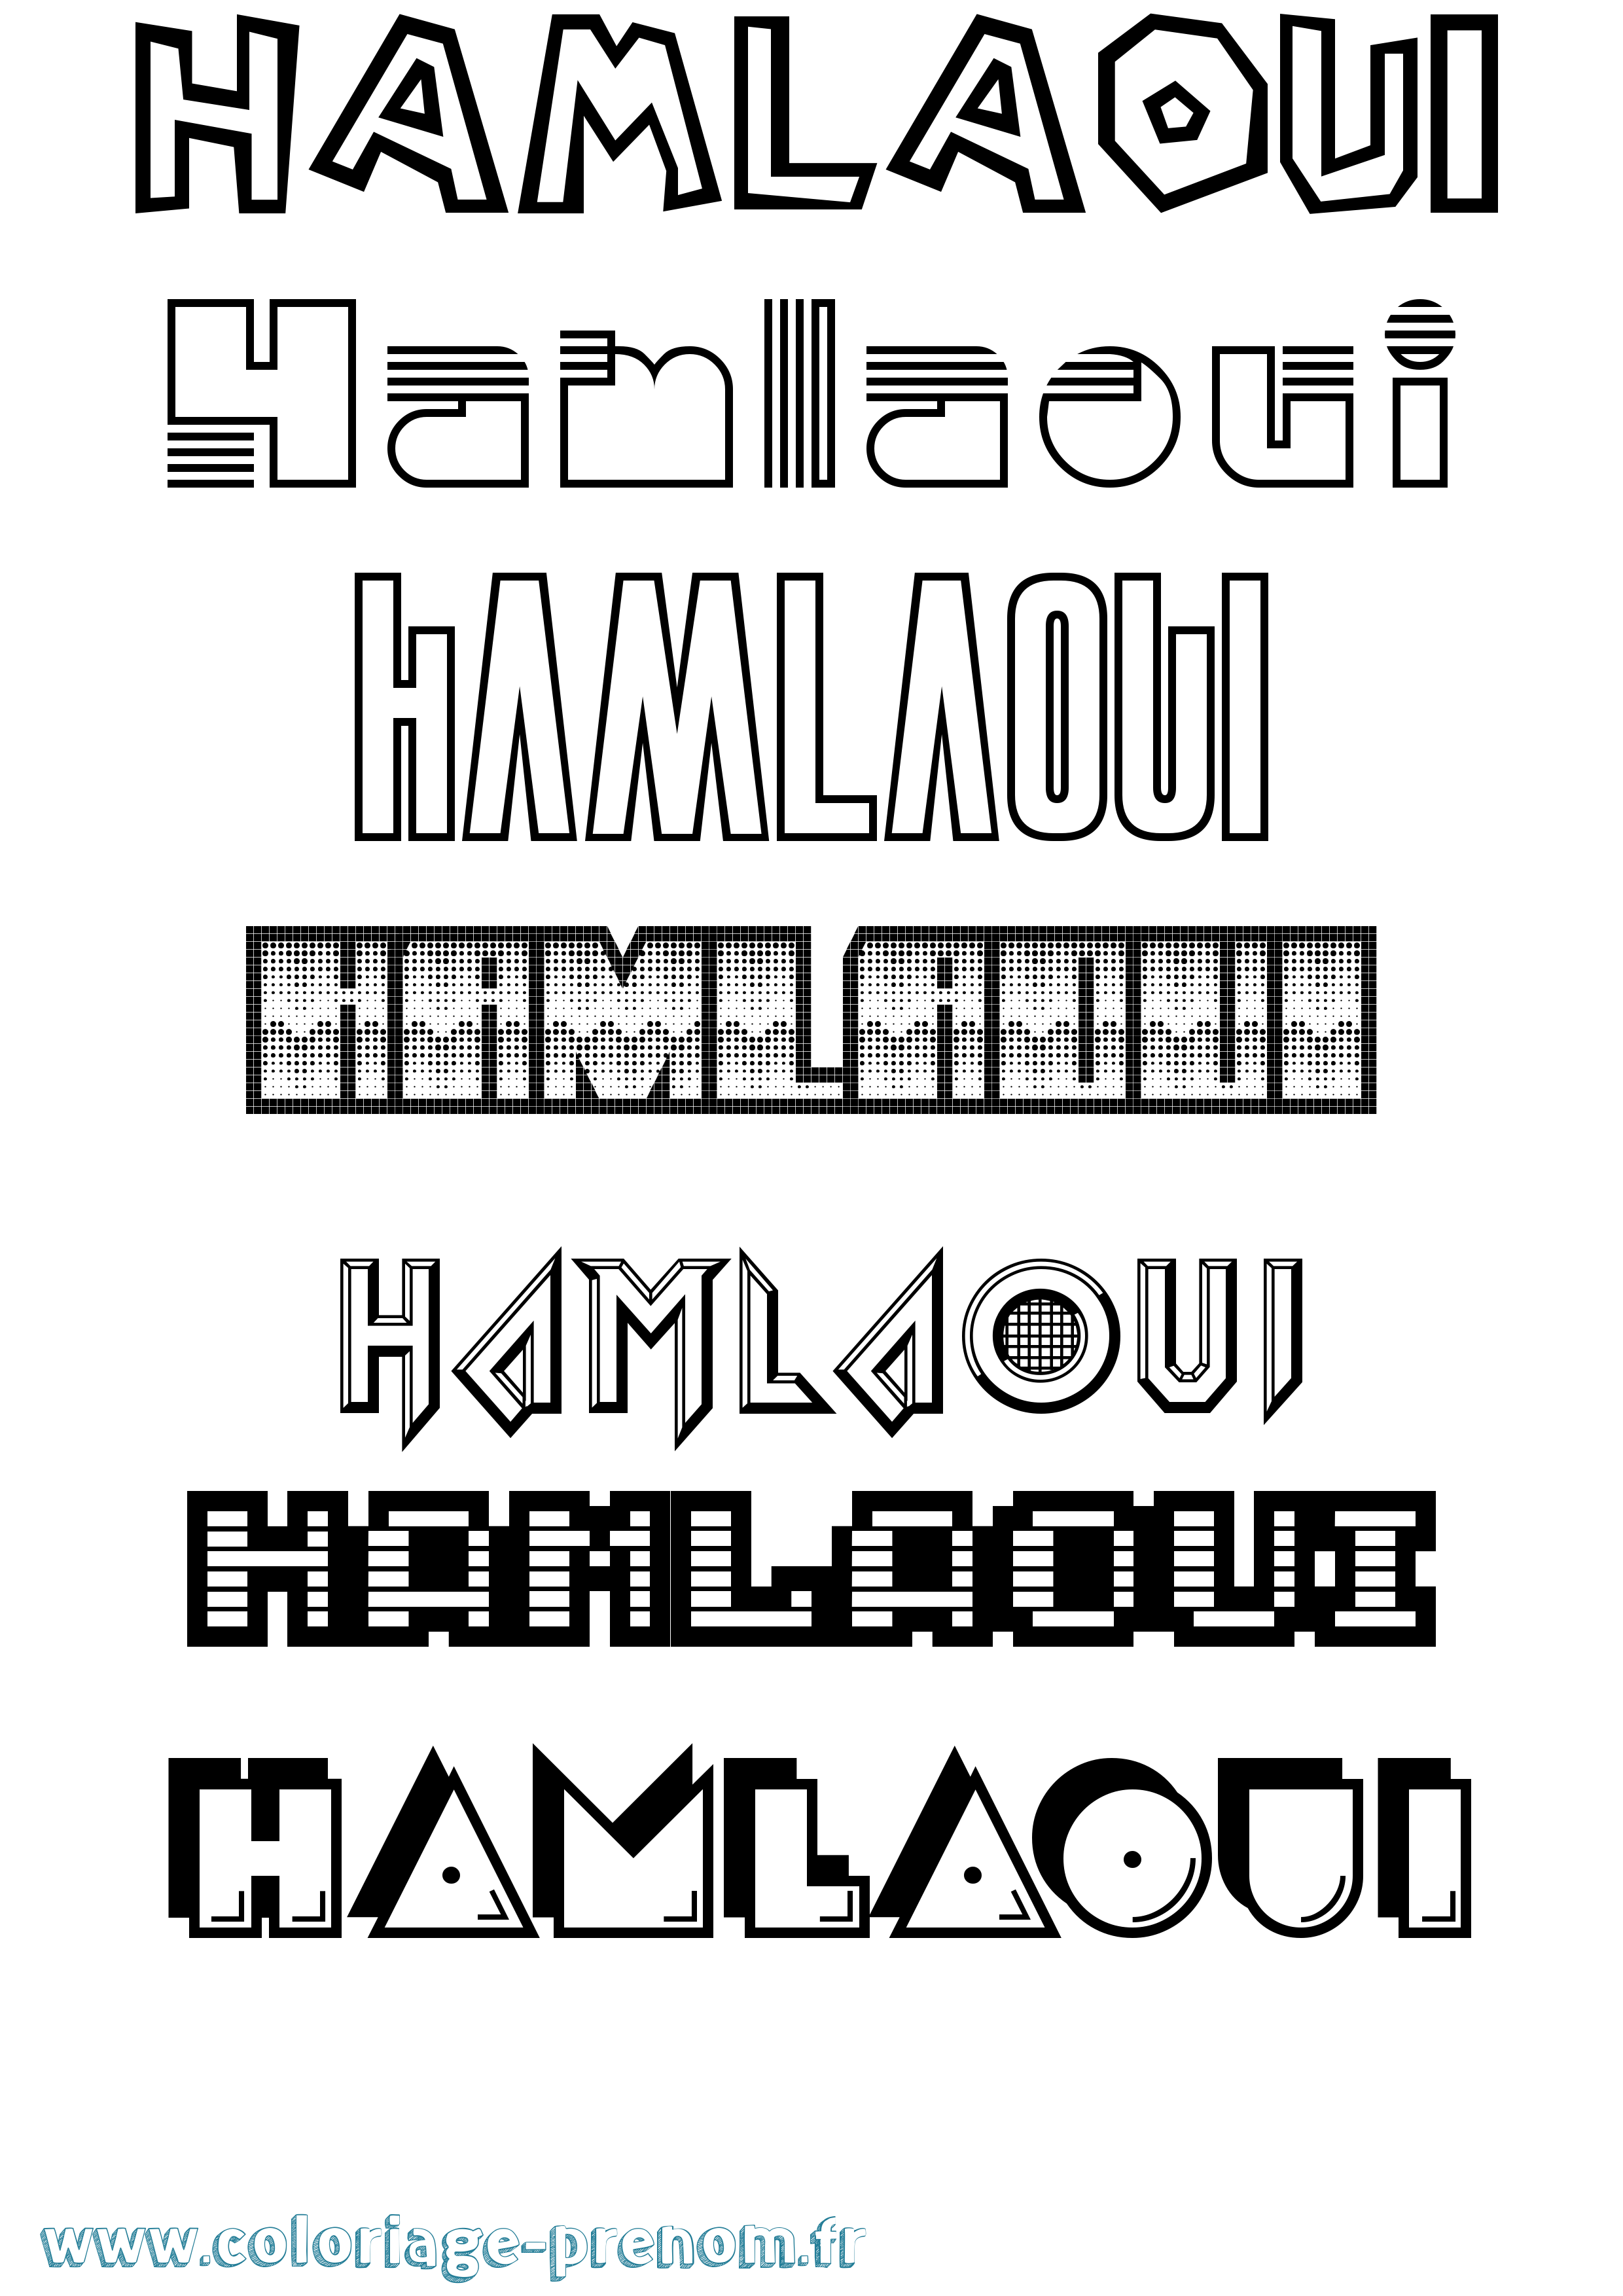 Coloriage prénom Hamlaoui Jeux Vidéos